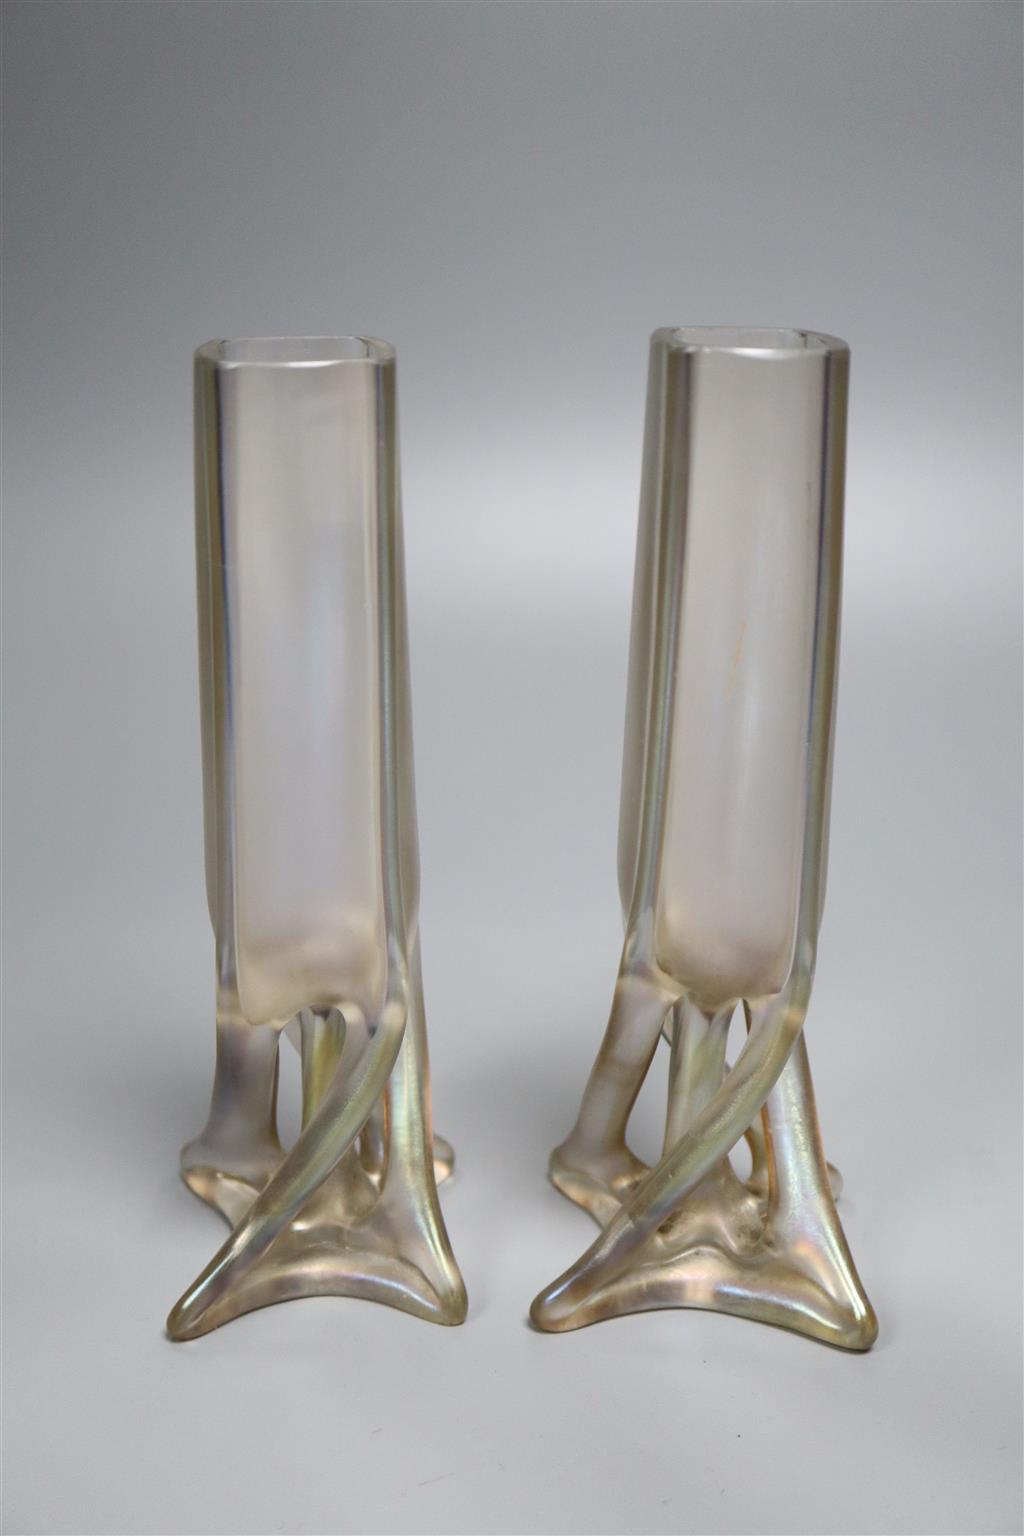 A pair of Loetz style Art Nouveau iridescent vases, H 20cm